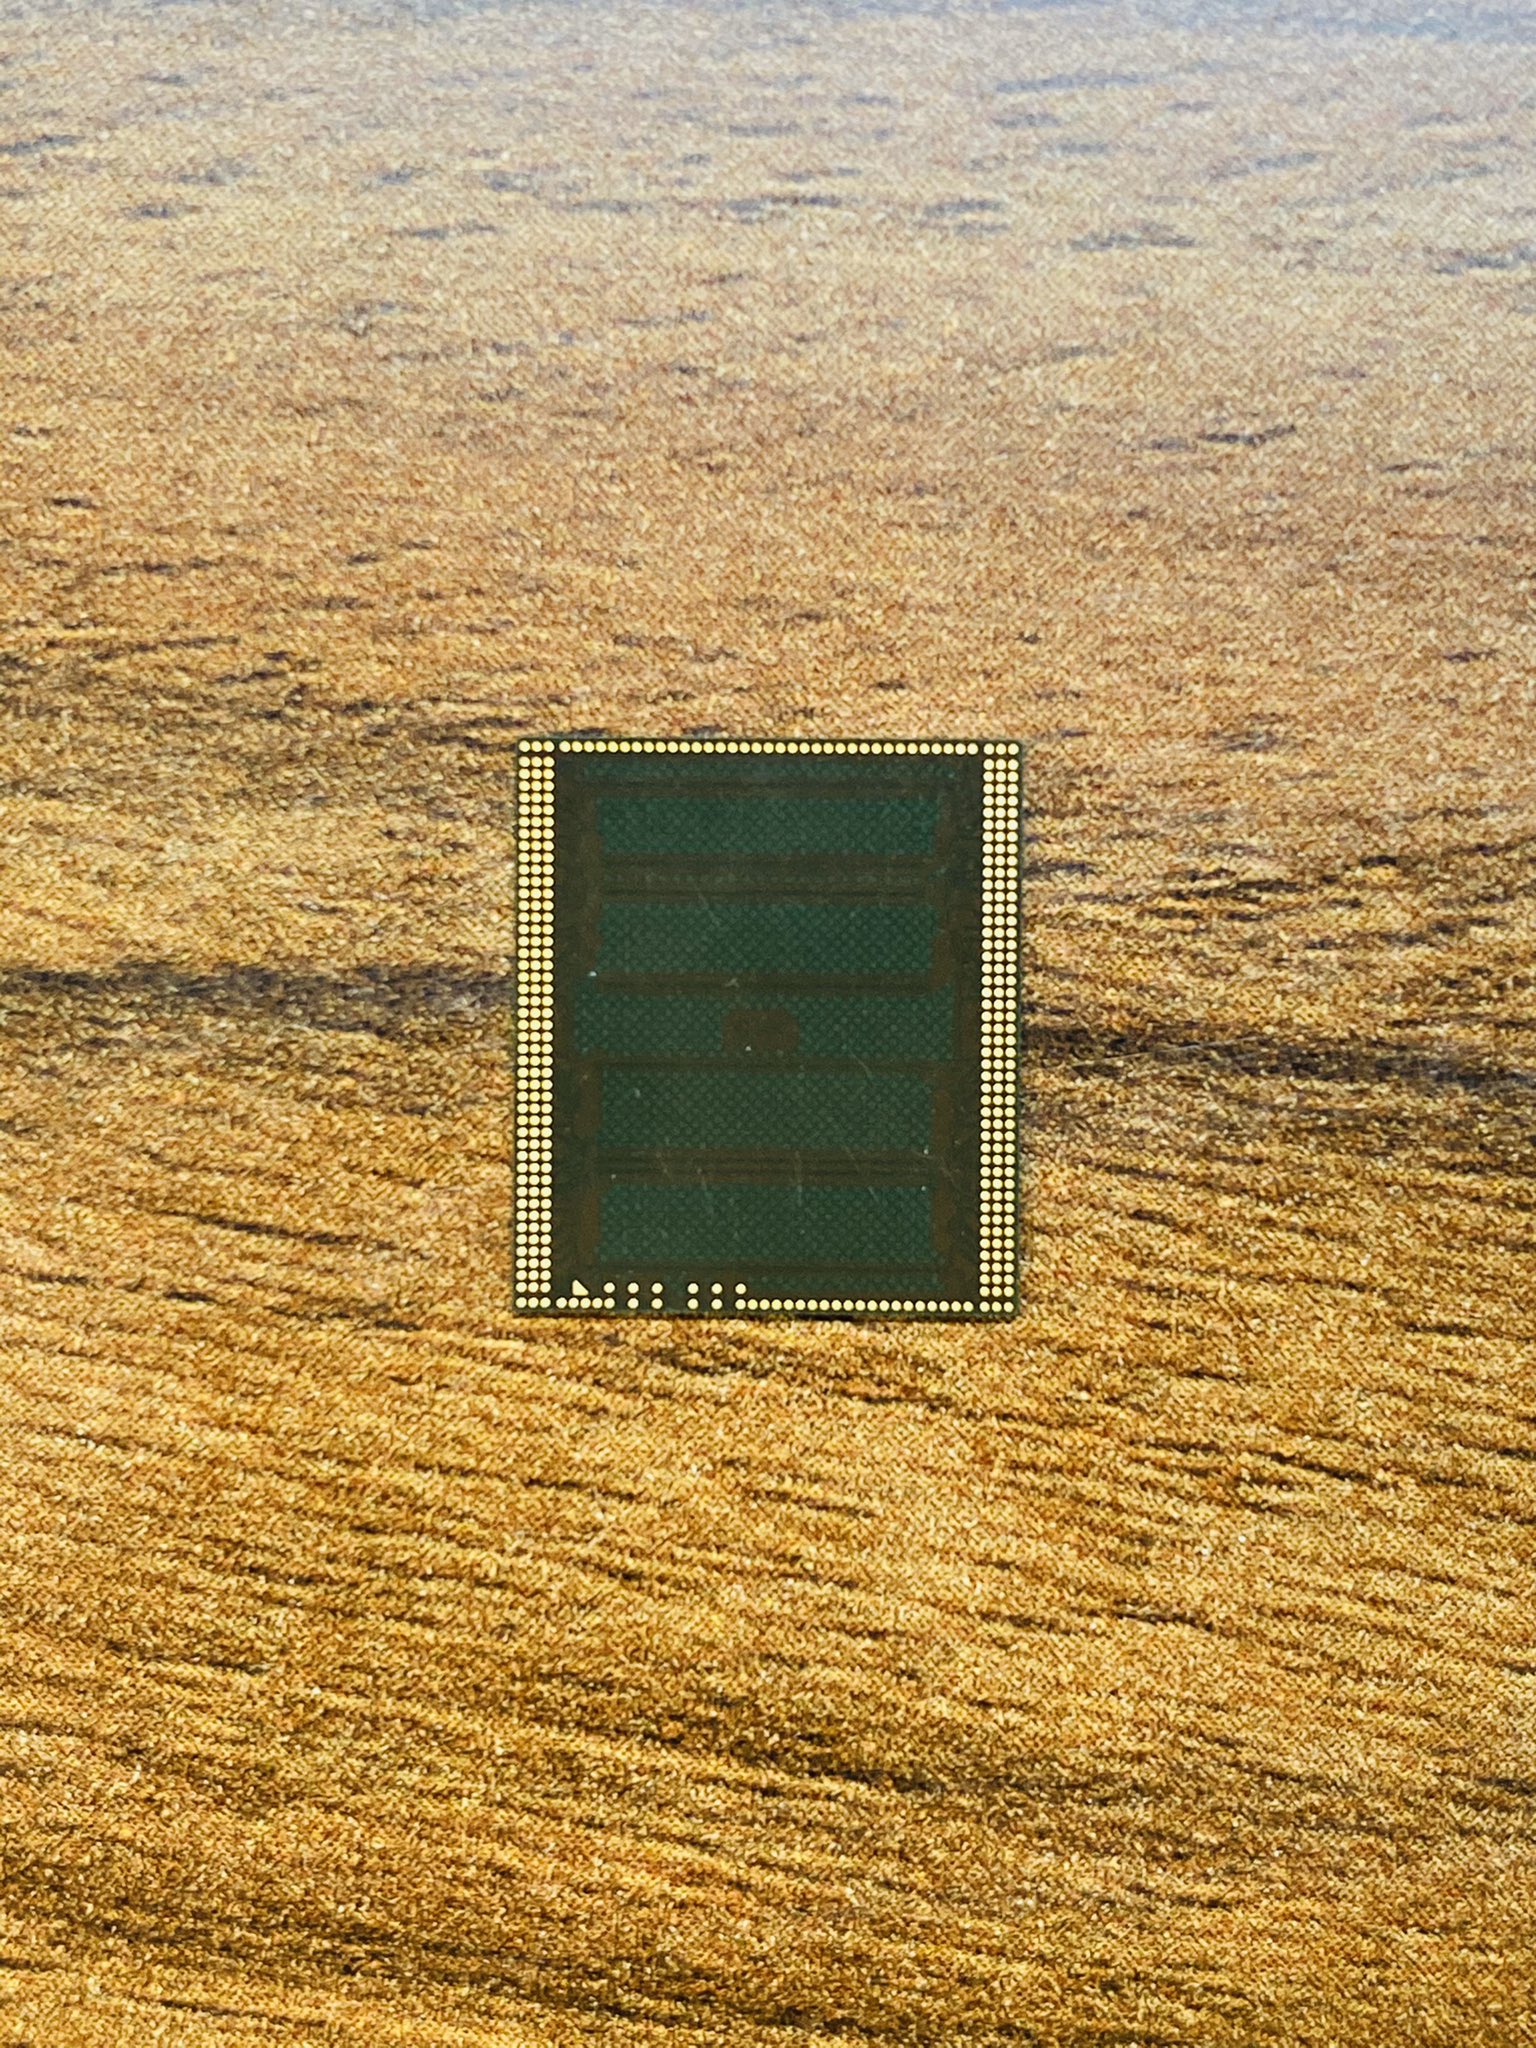 thành phần RAM của chip A14